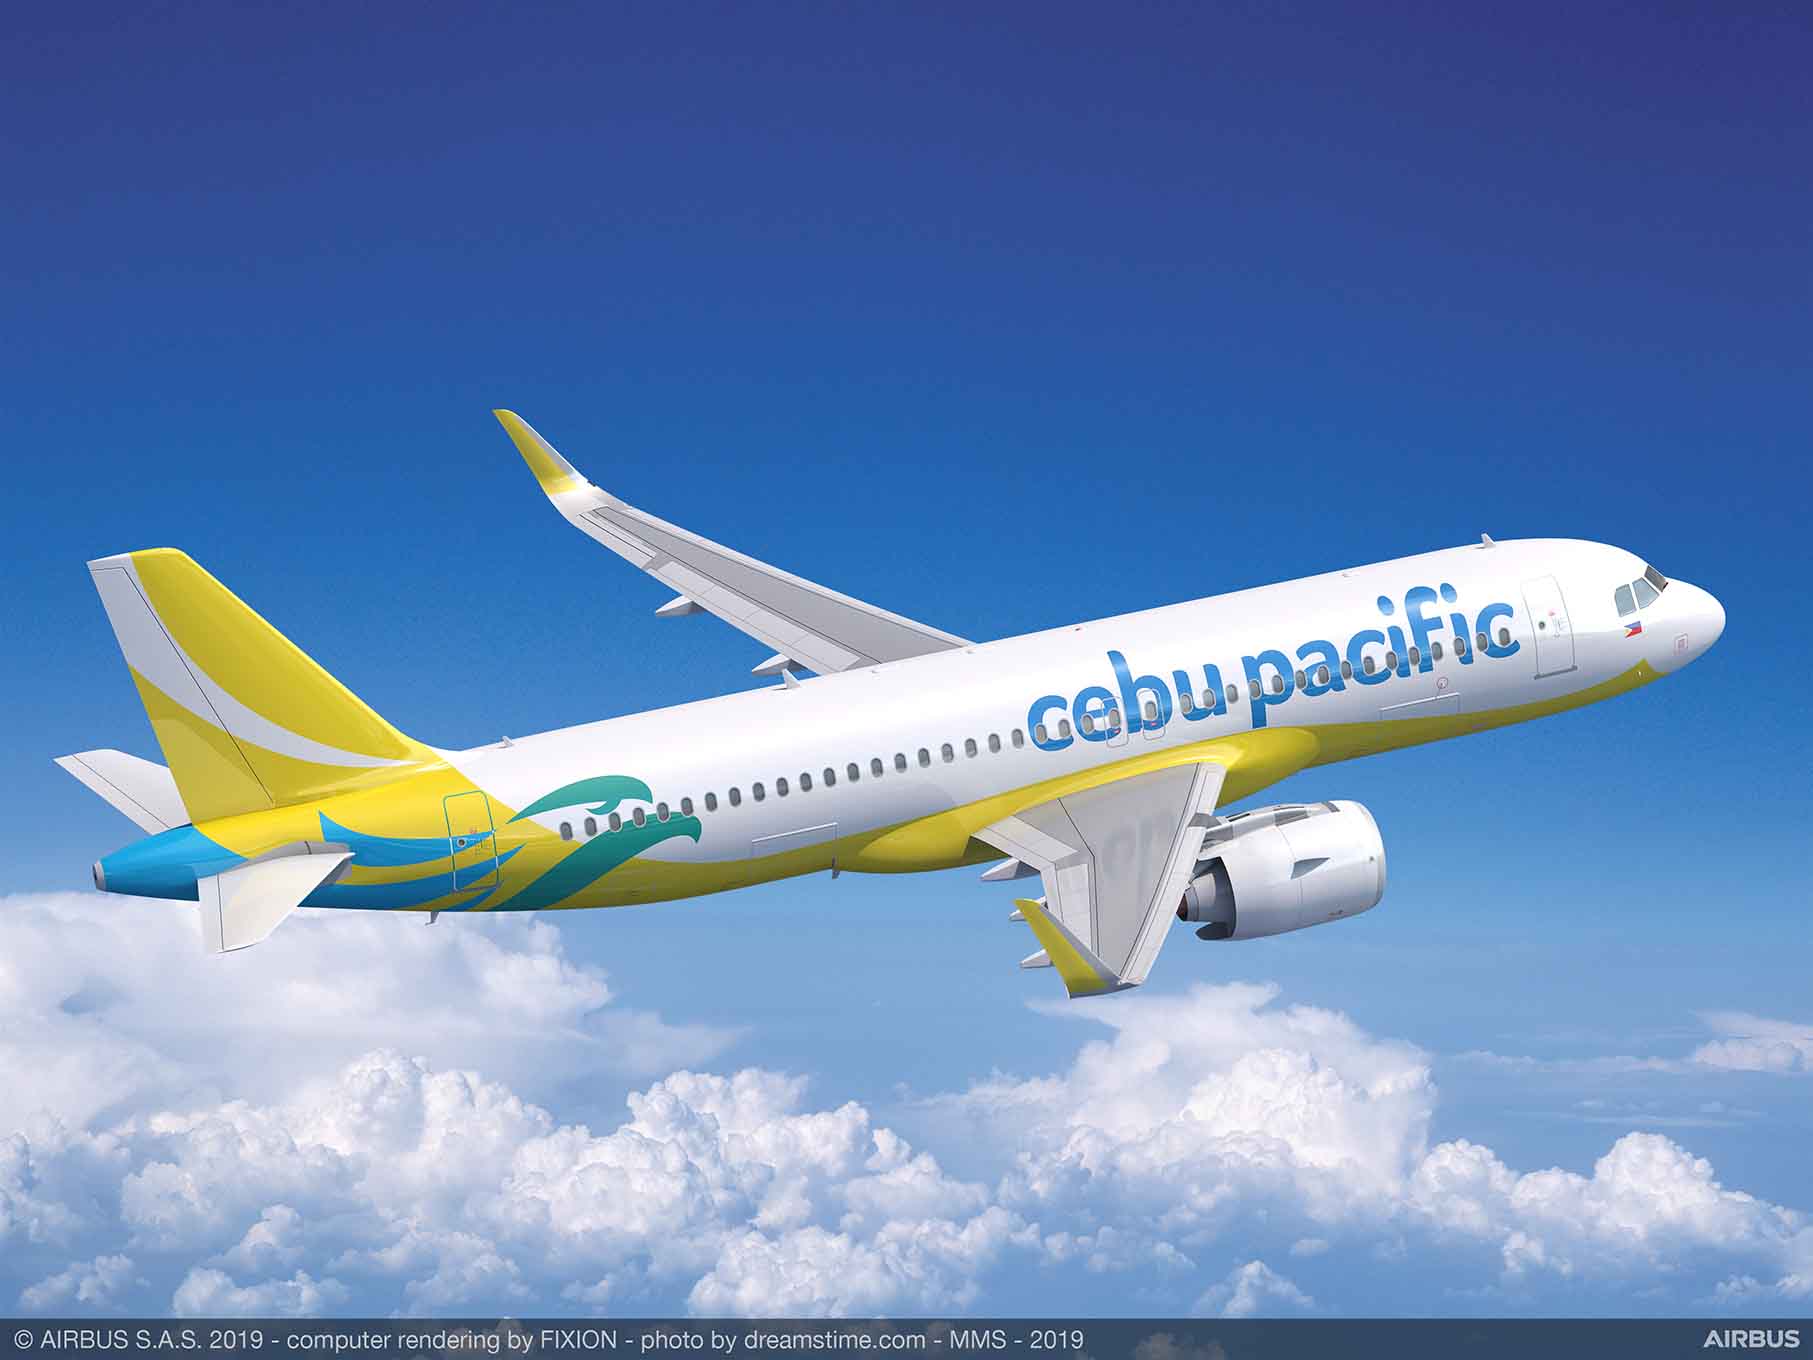 Cebu Pacific launching direct flights to Busuanga